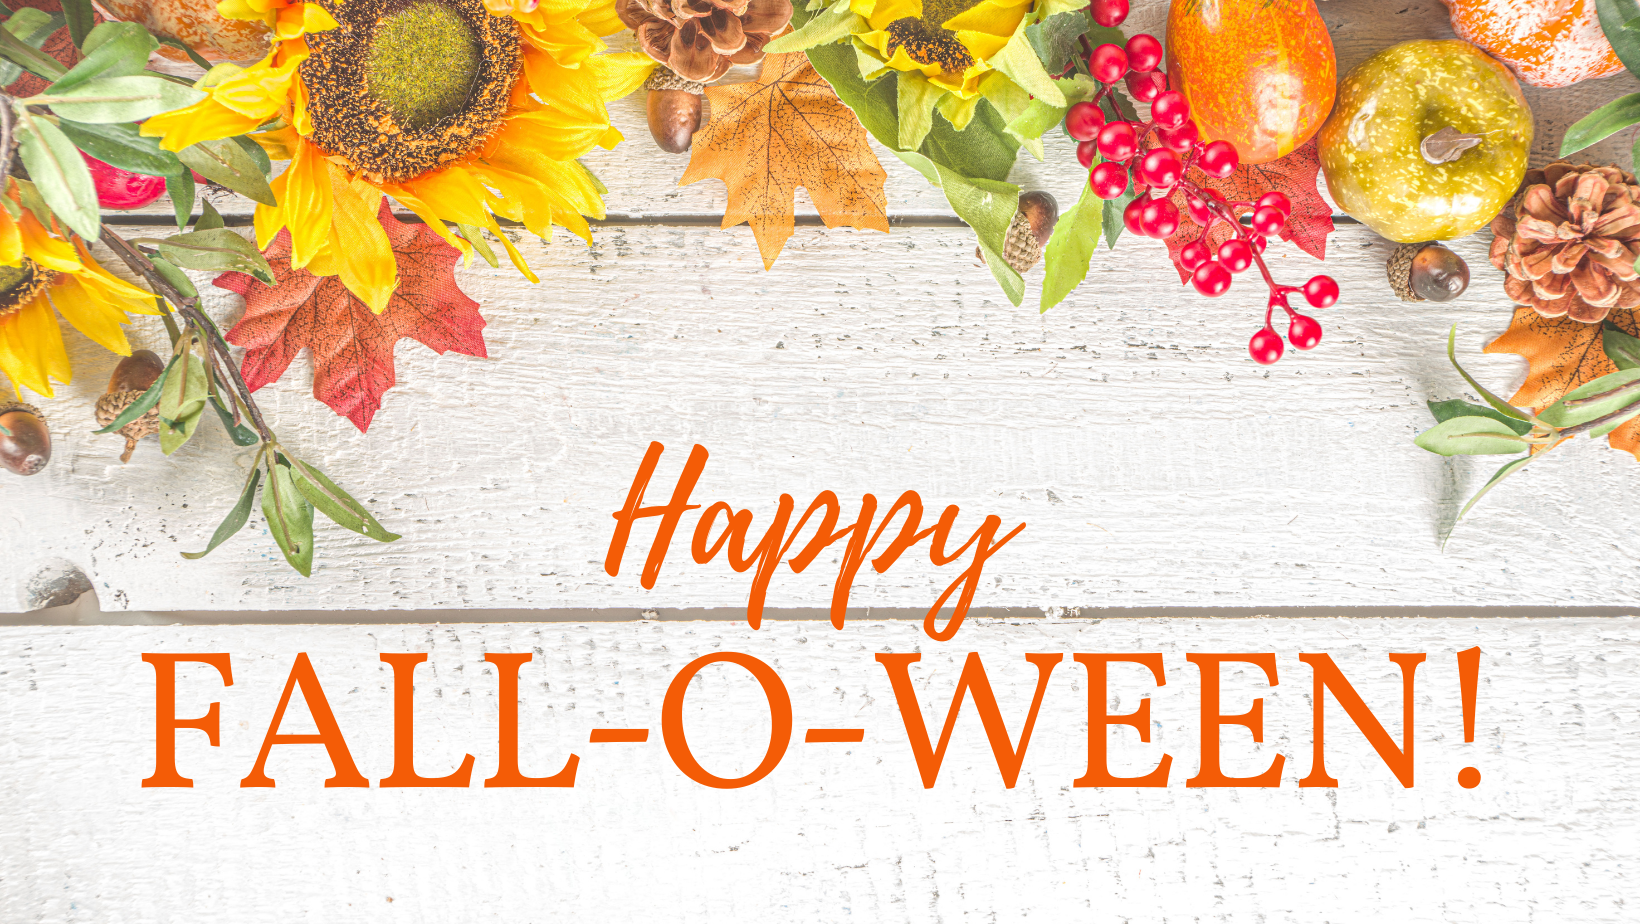 Happy Fall-o-ween!